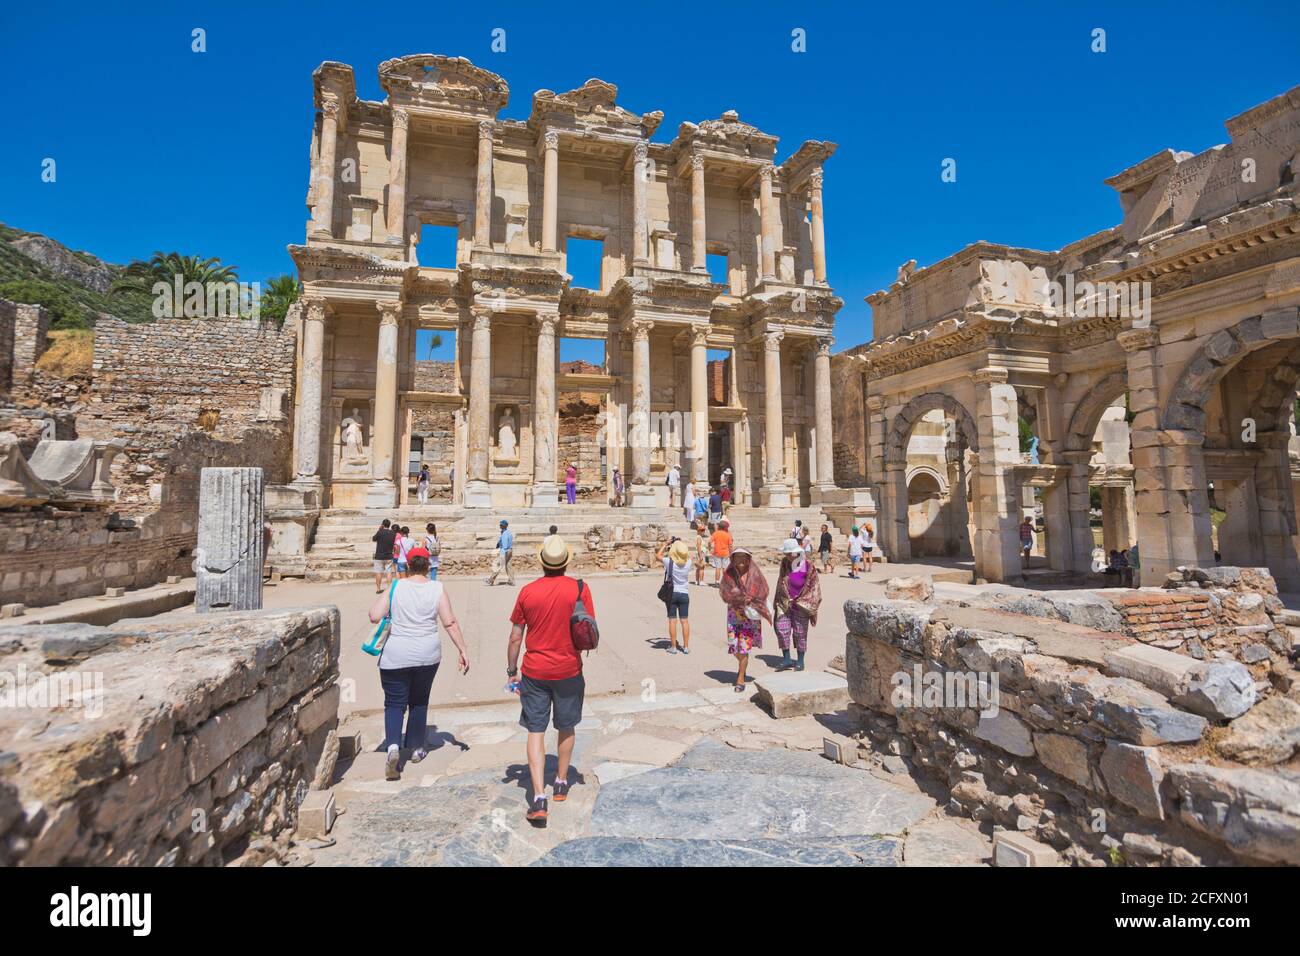 Ephèse, près de Selcuk, province d'Izmir, Turquie. Bibliothèque de Celsus, datant de 125 AD. Ephèse est un site classé au patrimoine mondial de l'UNESCO. Banque D'Images